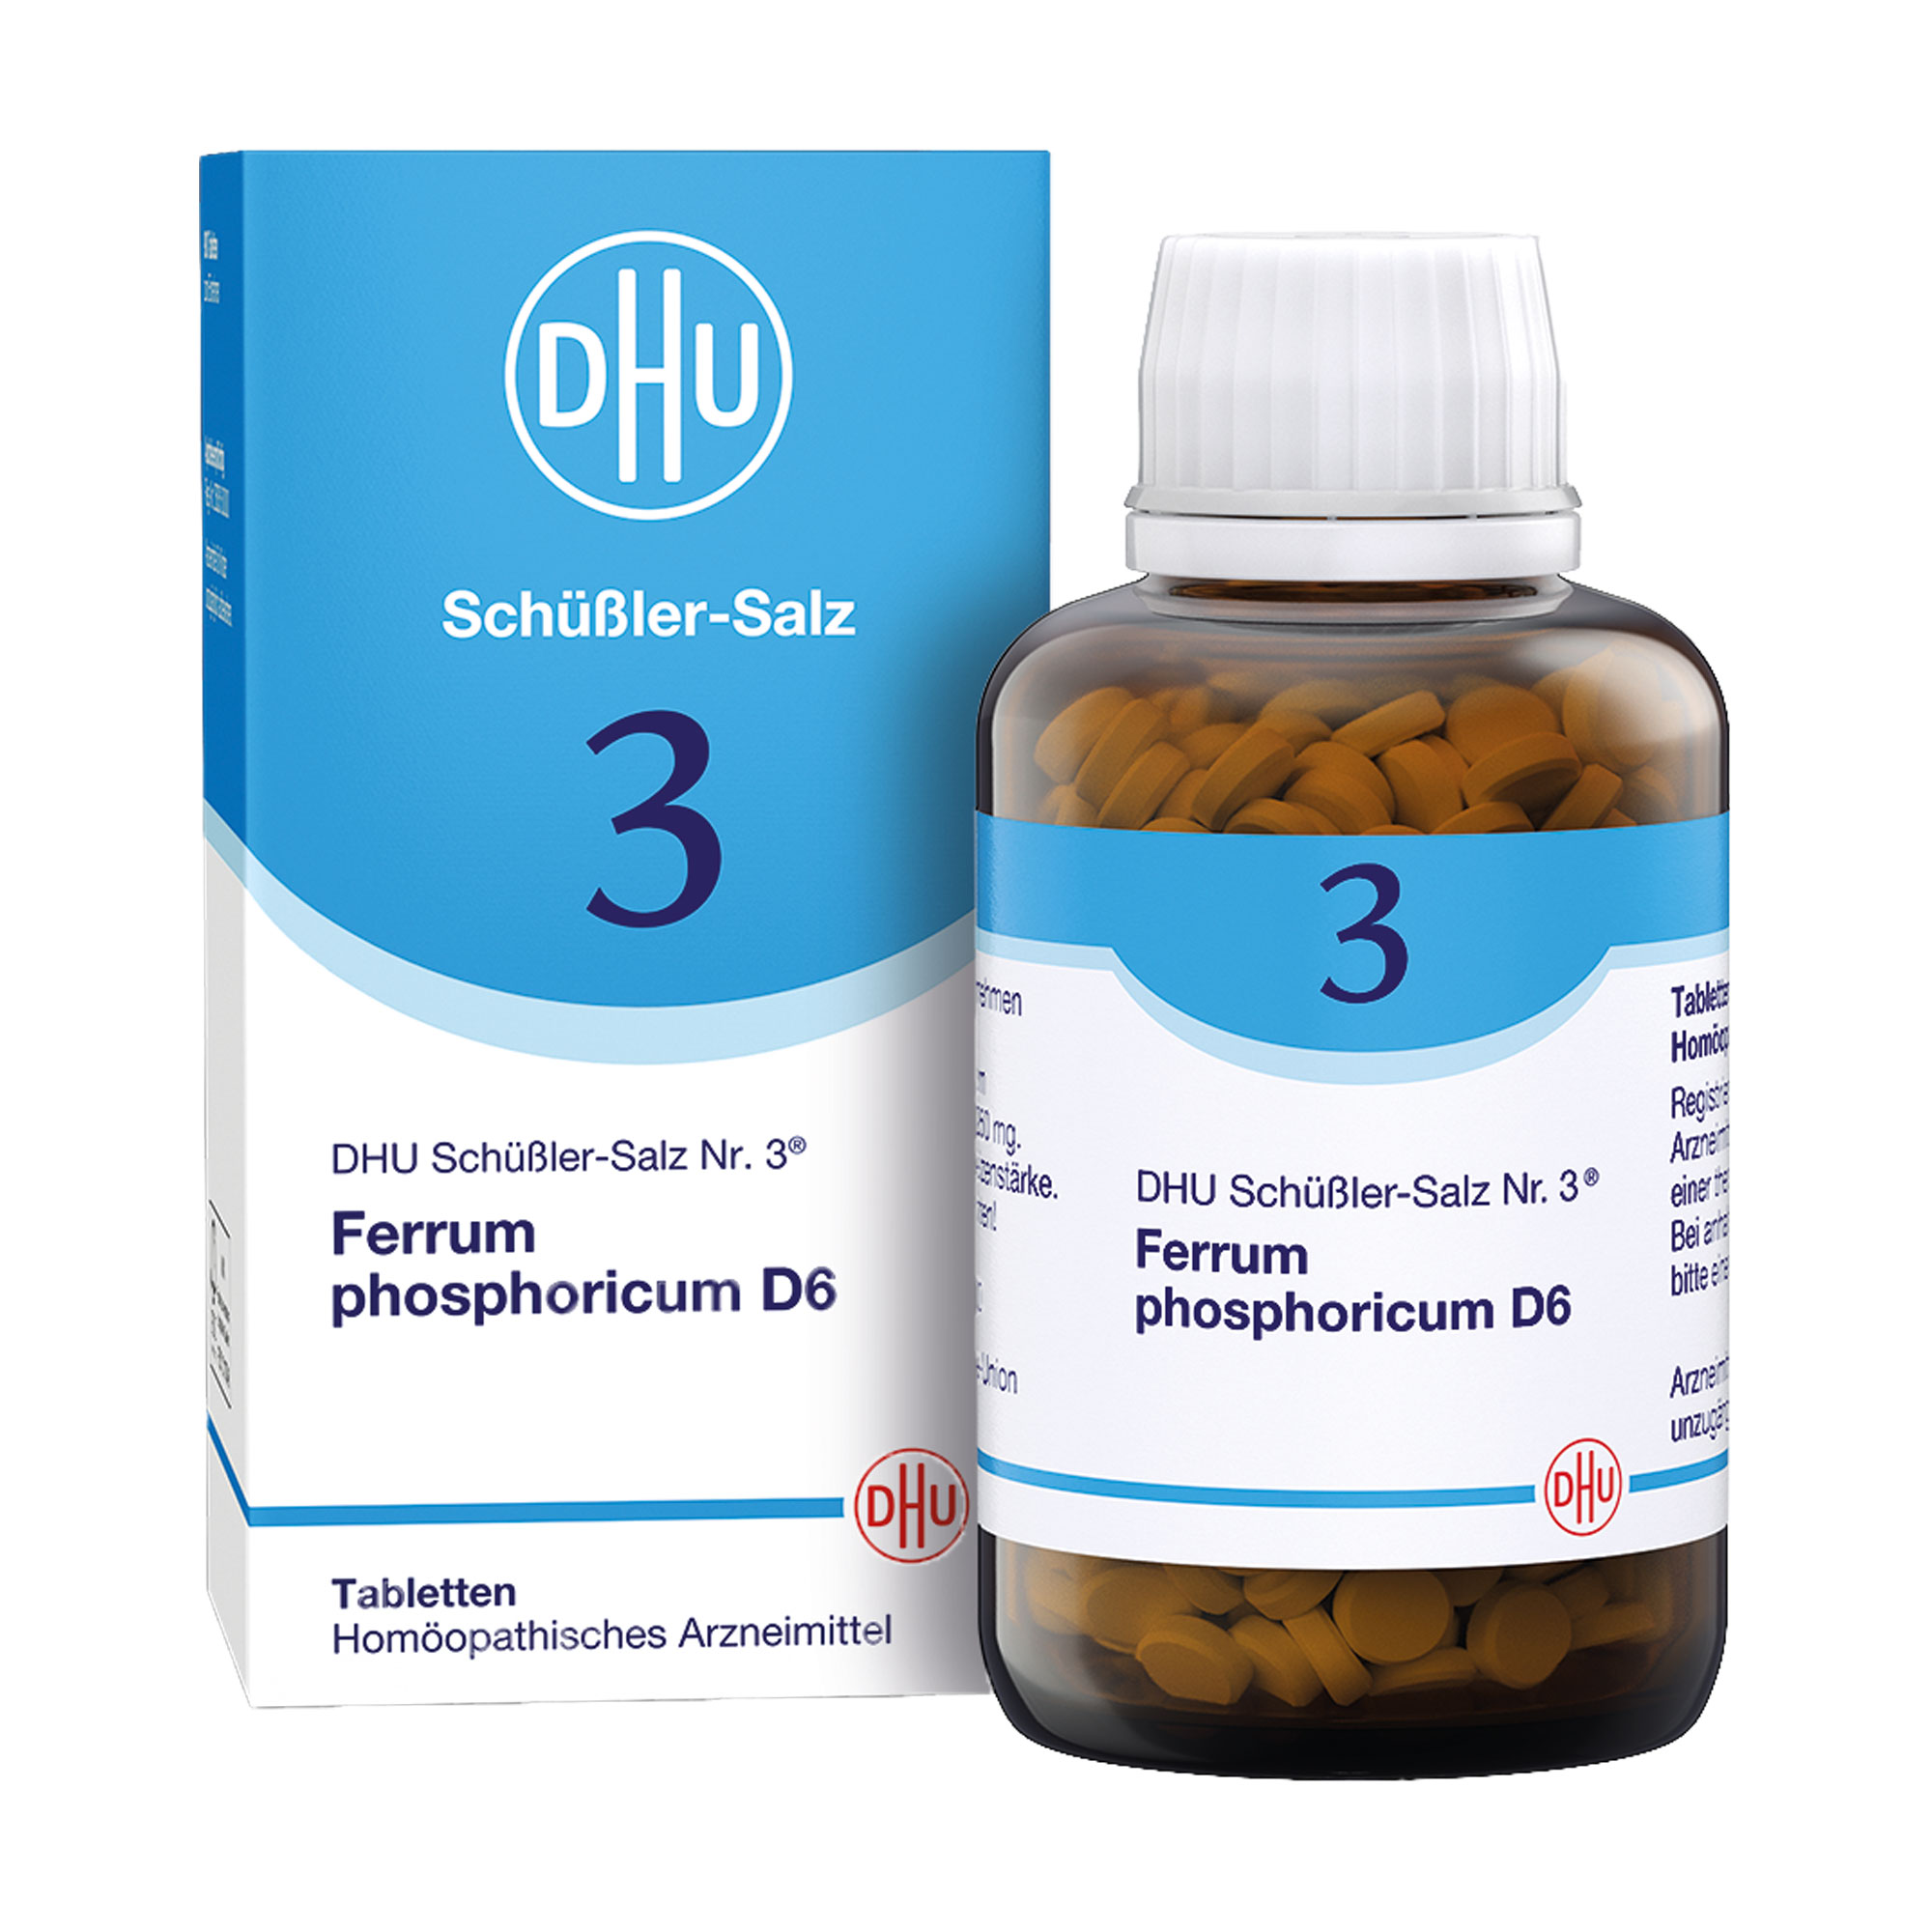 Homöopathisches Arzneimittel mit Ferrum phosphoricum Trit. D6.